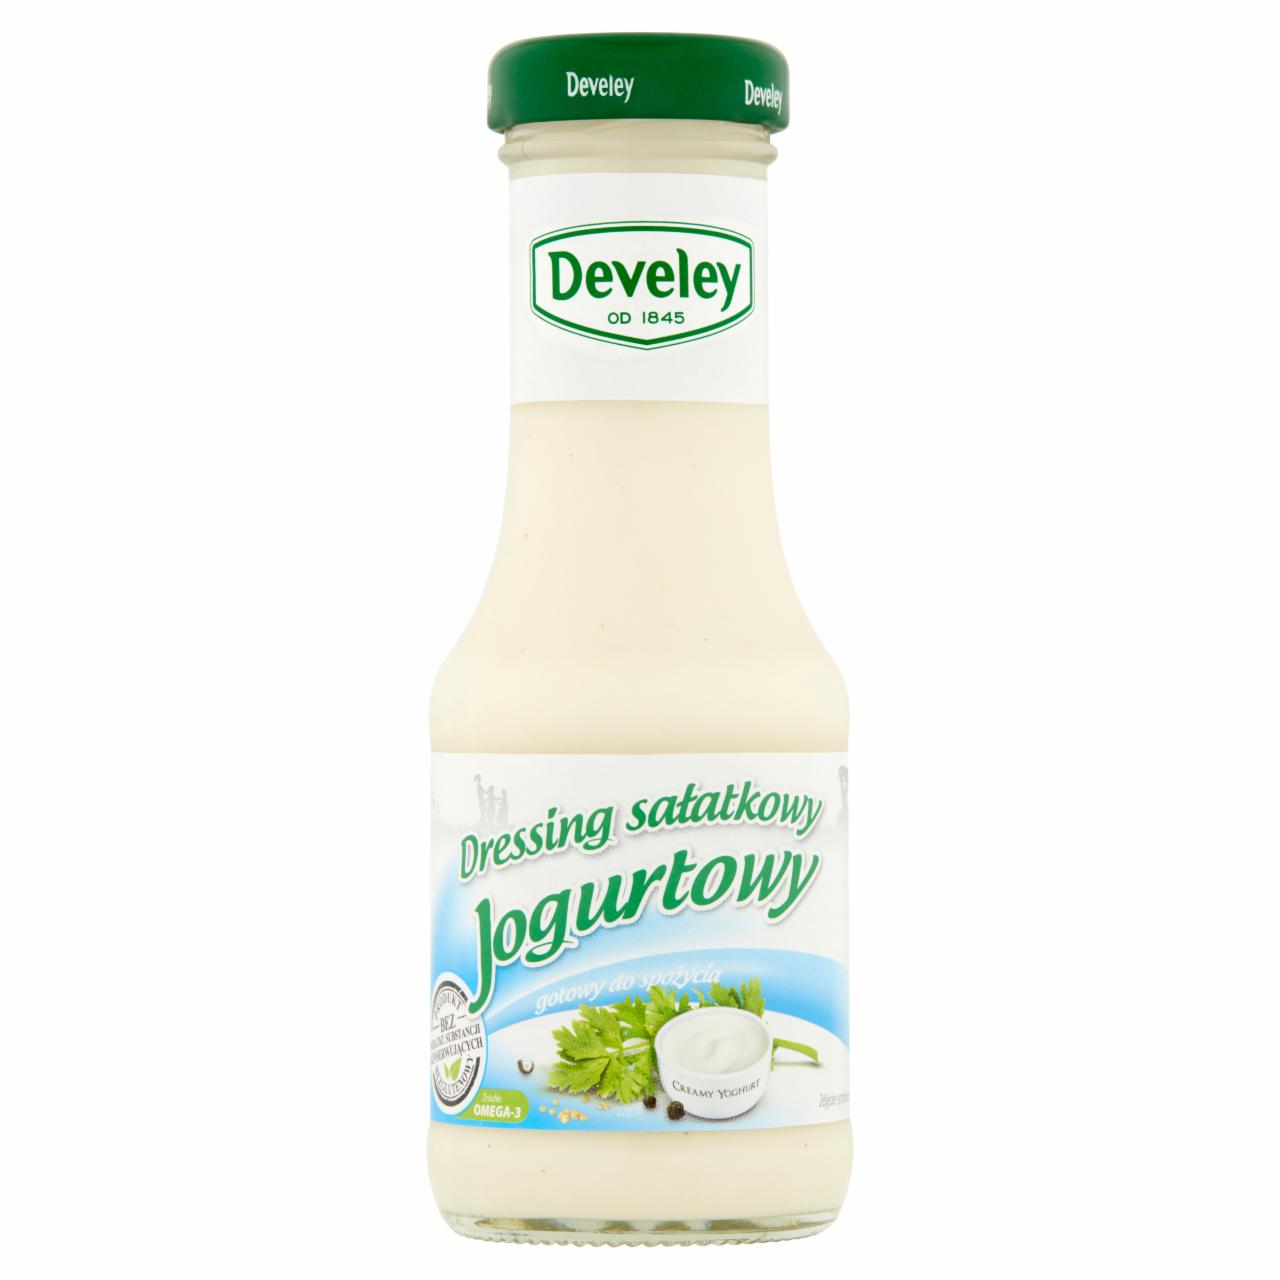 Zdjęcia - Develey Dressing sałatkowy jogurtowy 200 ml